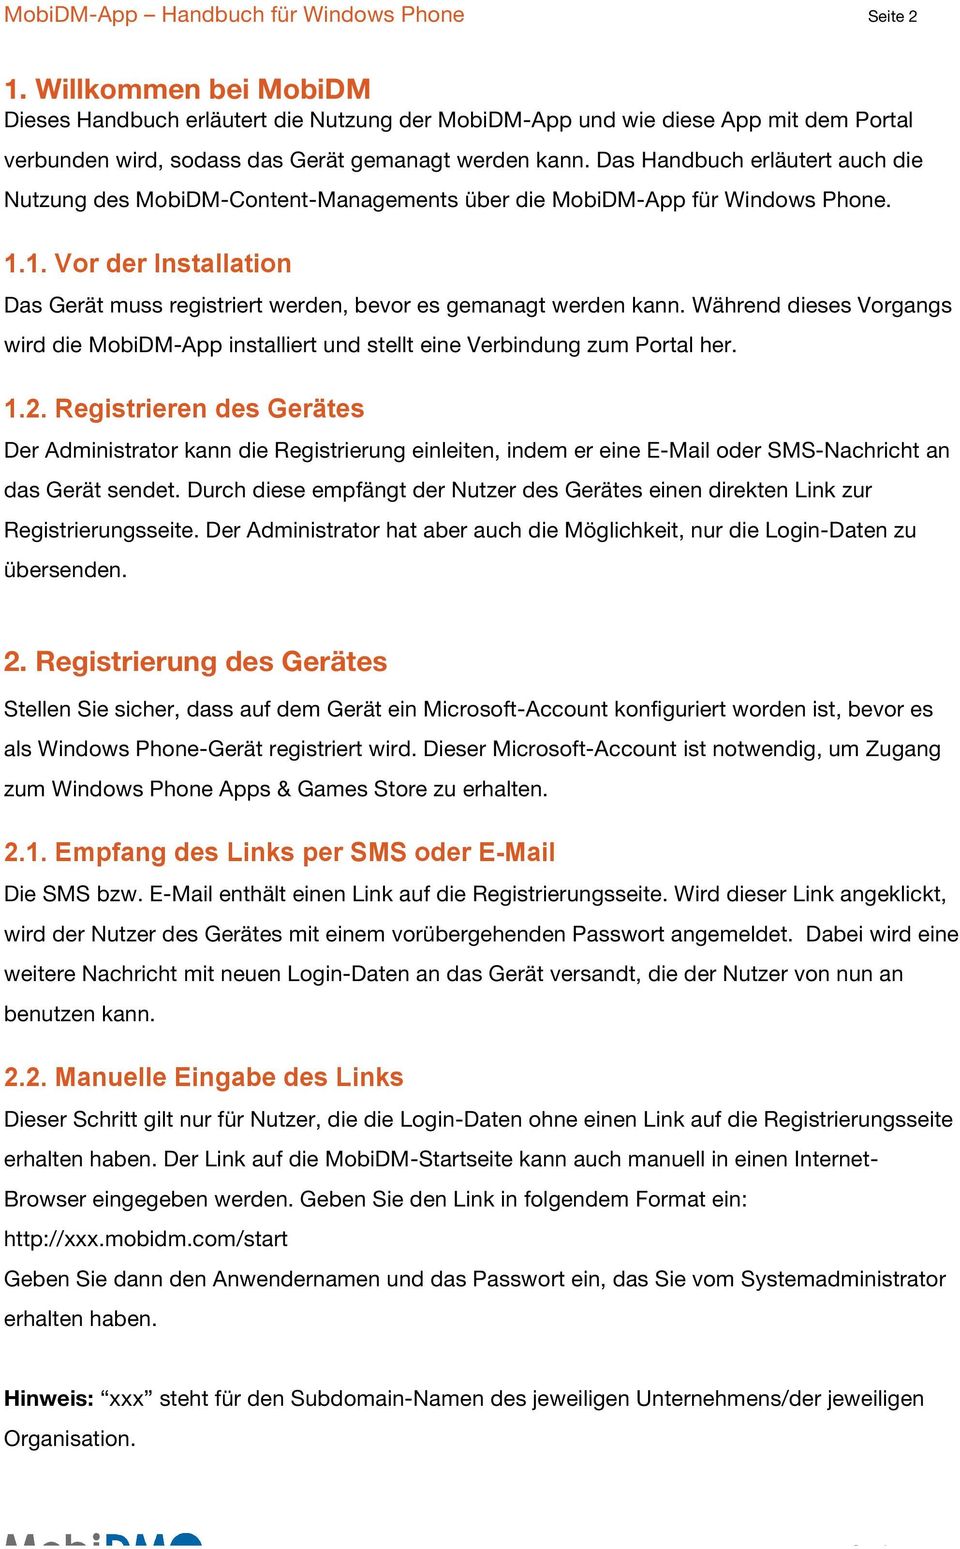 Das Handbuch erläutert auch die Nutzung des MobiDM-Content-Managements über die MobiDM-App für Windows Phone. 1.1. Vor der Installation Das Gerät muss registriert werden, bevor es gemanagt werden kann.